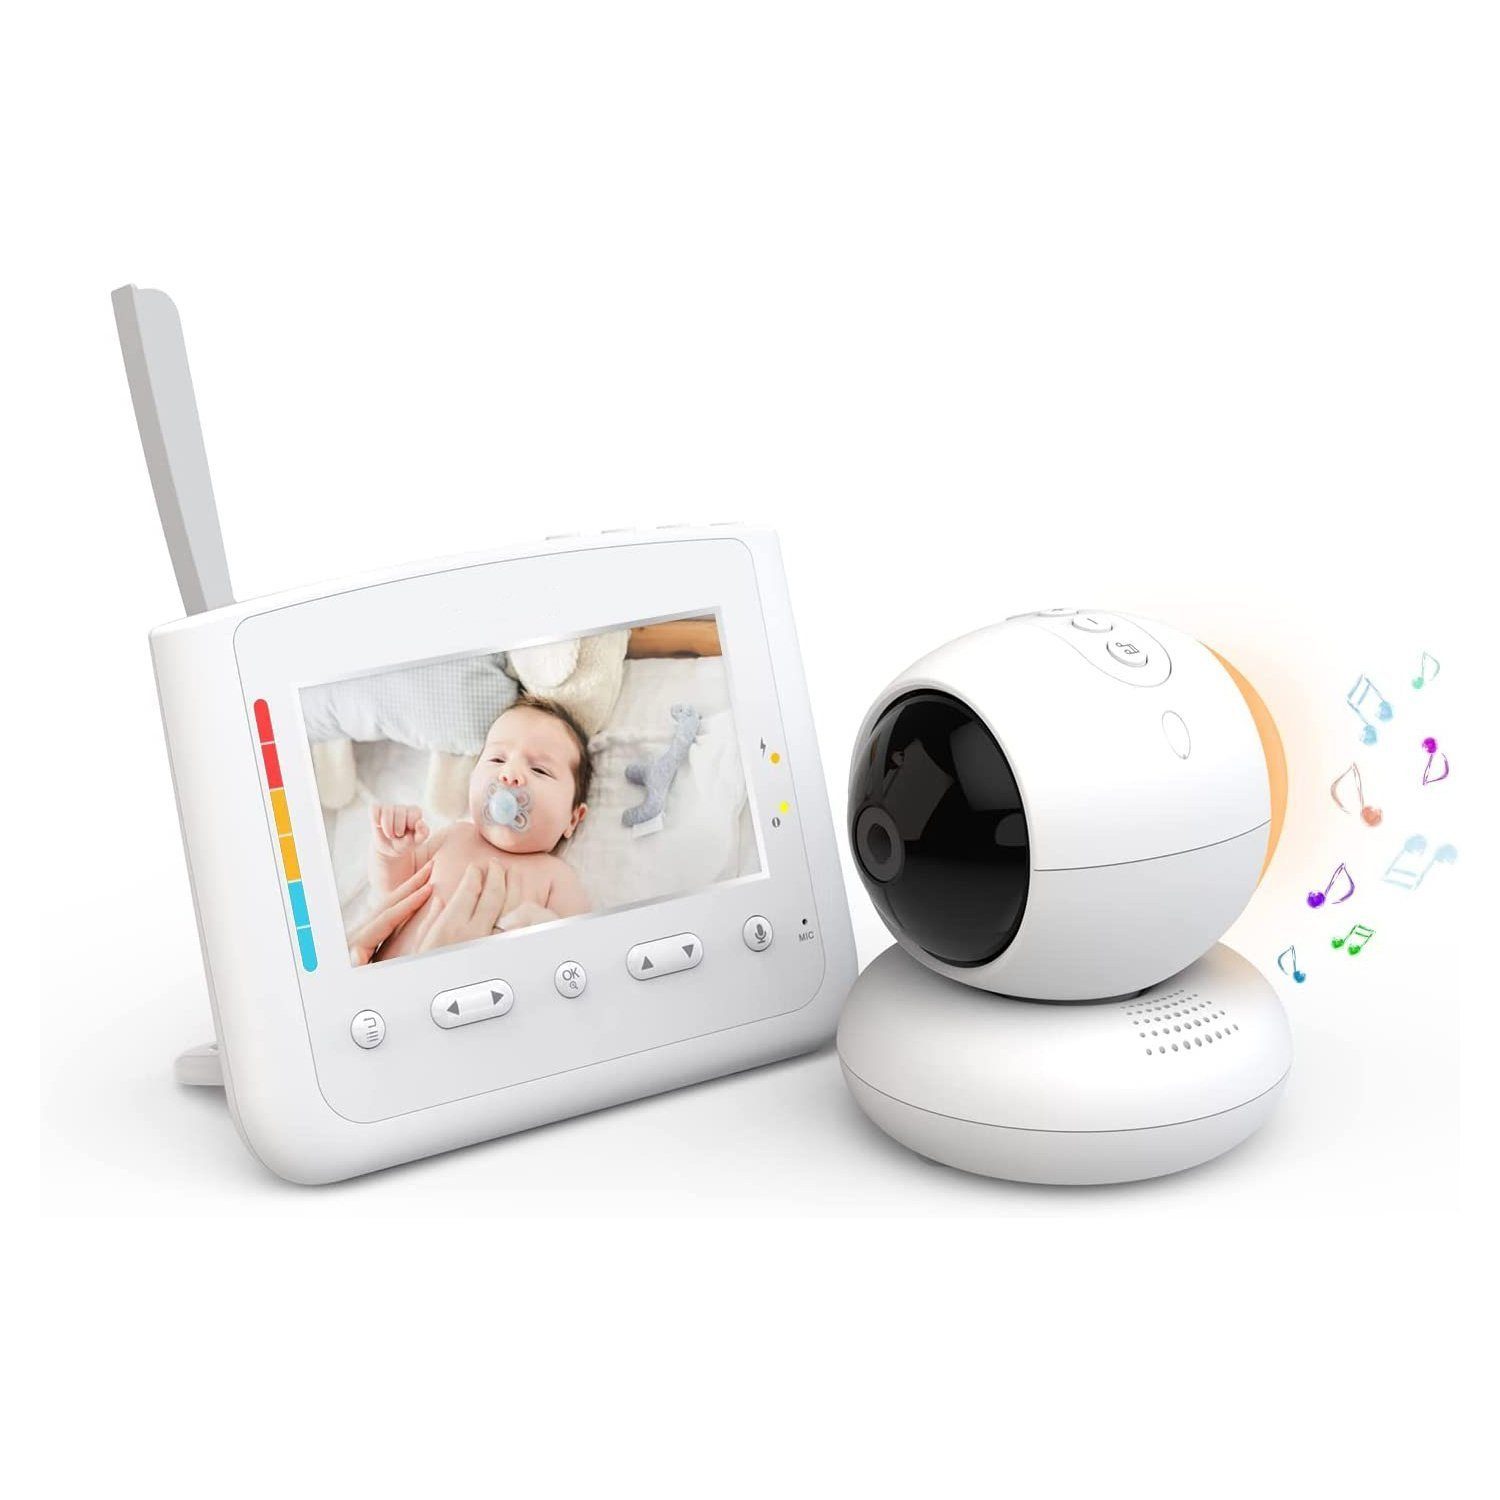 Mutoy Video-Babyphone Babyphone mit Kamera, 4,3-Zoll-LCD-Bildschirm, Ferngesteuerter Pan-Tilt-Zoom, Nachtlicht, Infrarot-Nachtsicht, Temperaturanzeige, Schlaflieder, Zwei-Wege-Audio, Gegensprechfunktion und Smart ECO-Modus